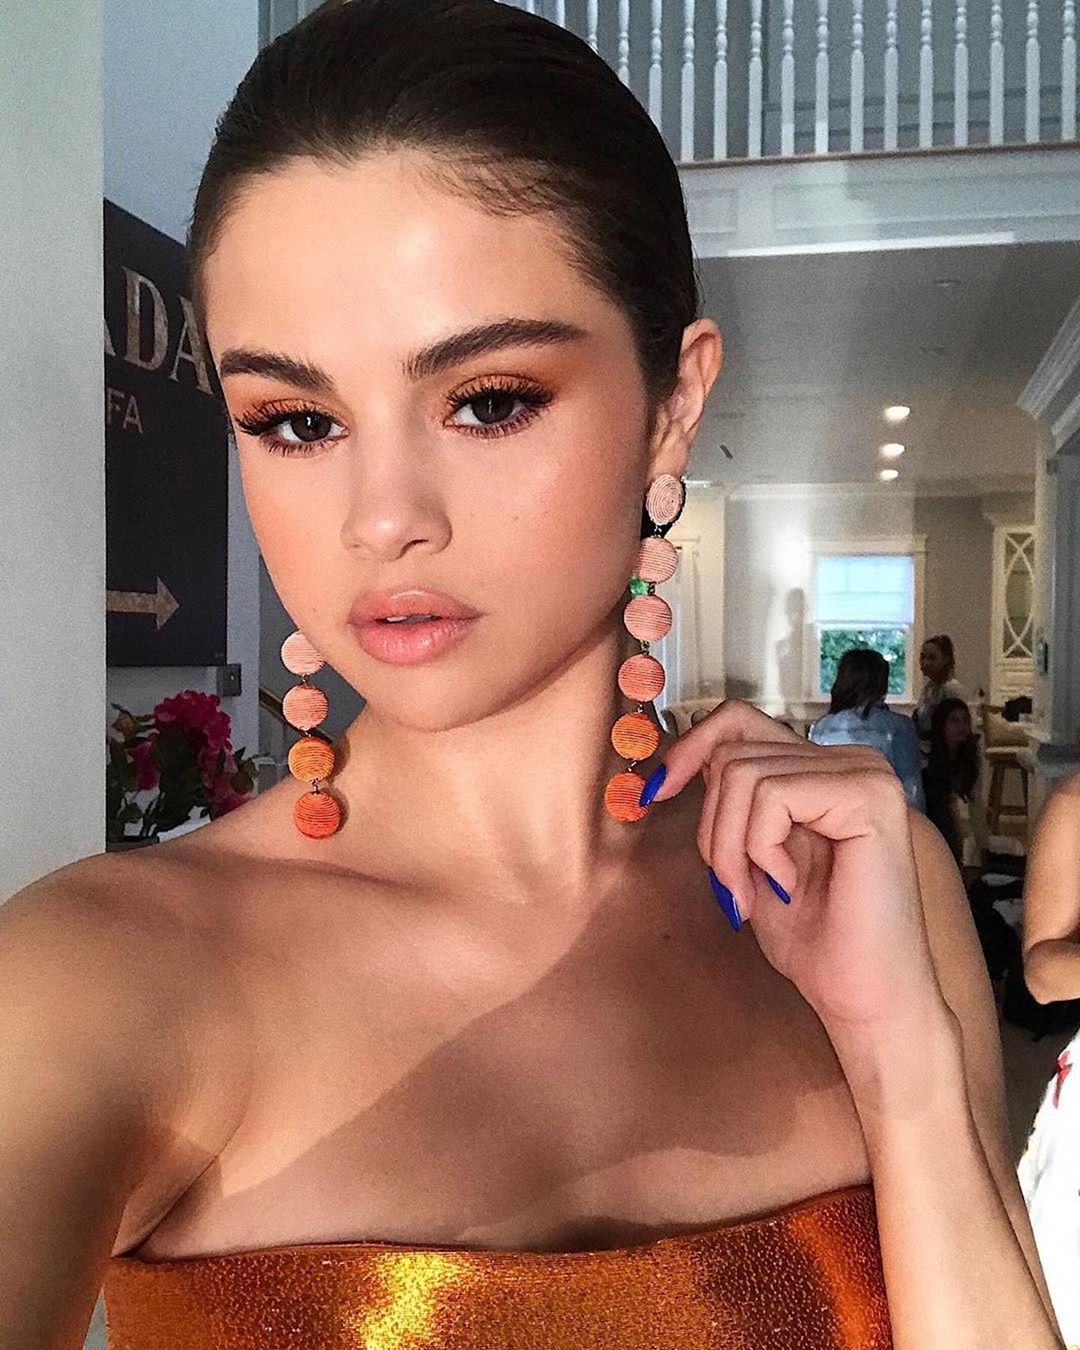 Nail inspo: τι χρώμα έχει τα νύχια της αυτή η στιγμή η Selena Gomez;